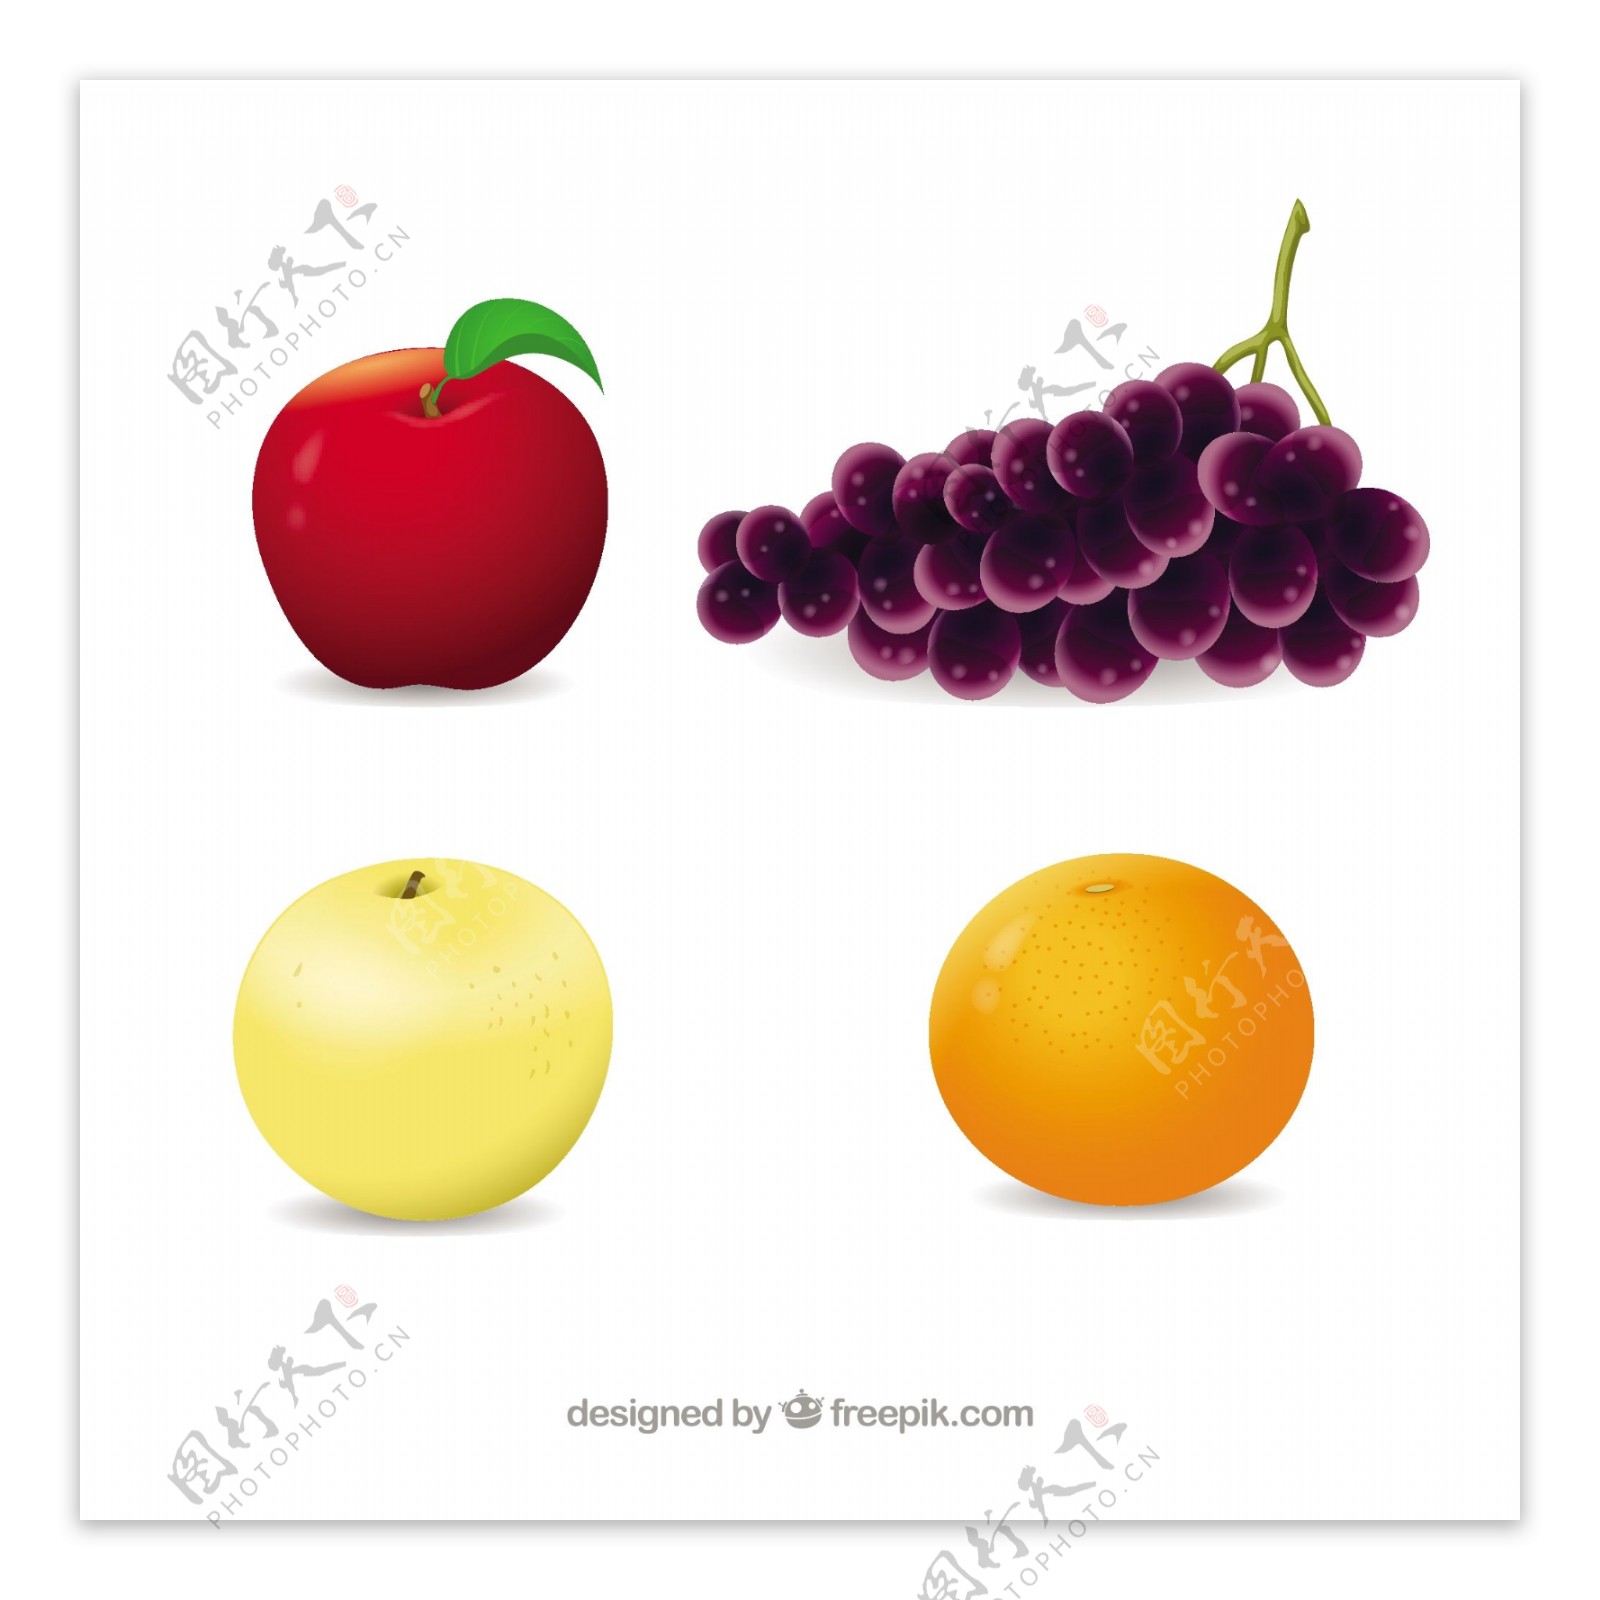 几种水果的写实设计矢量素材